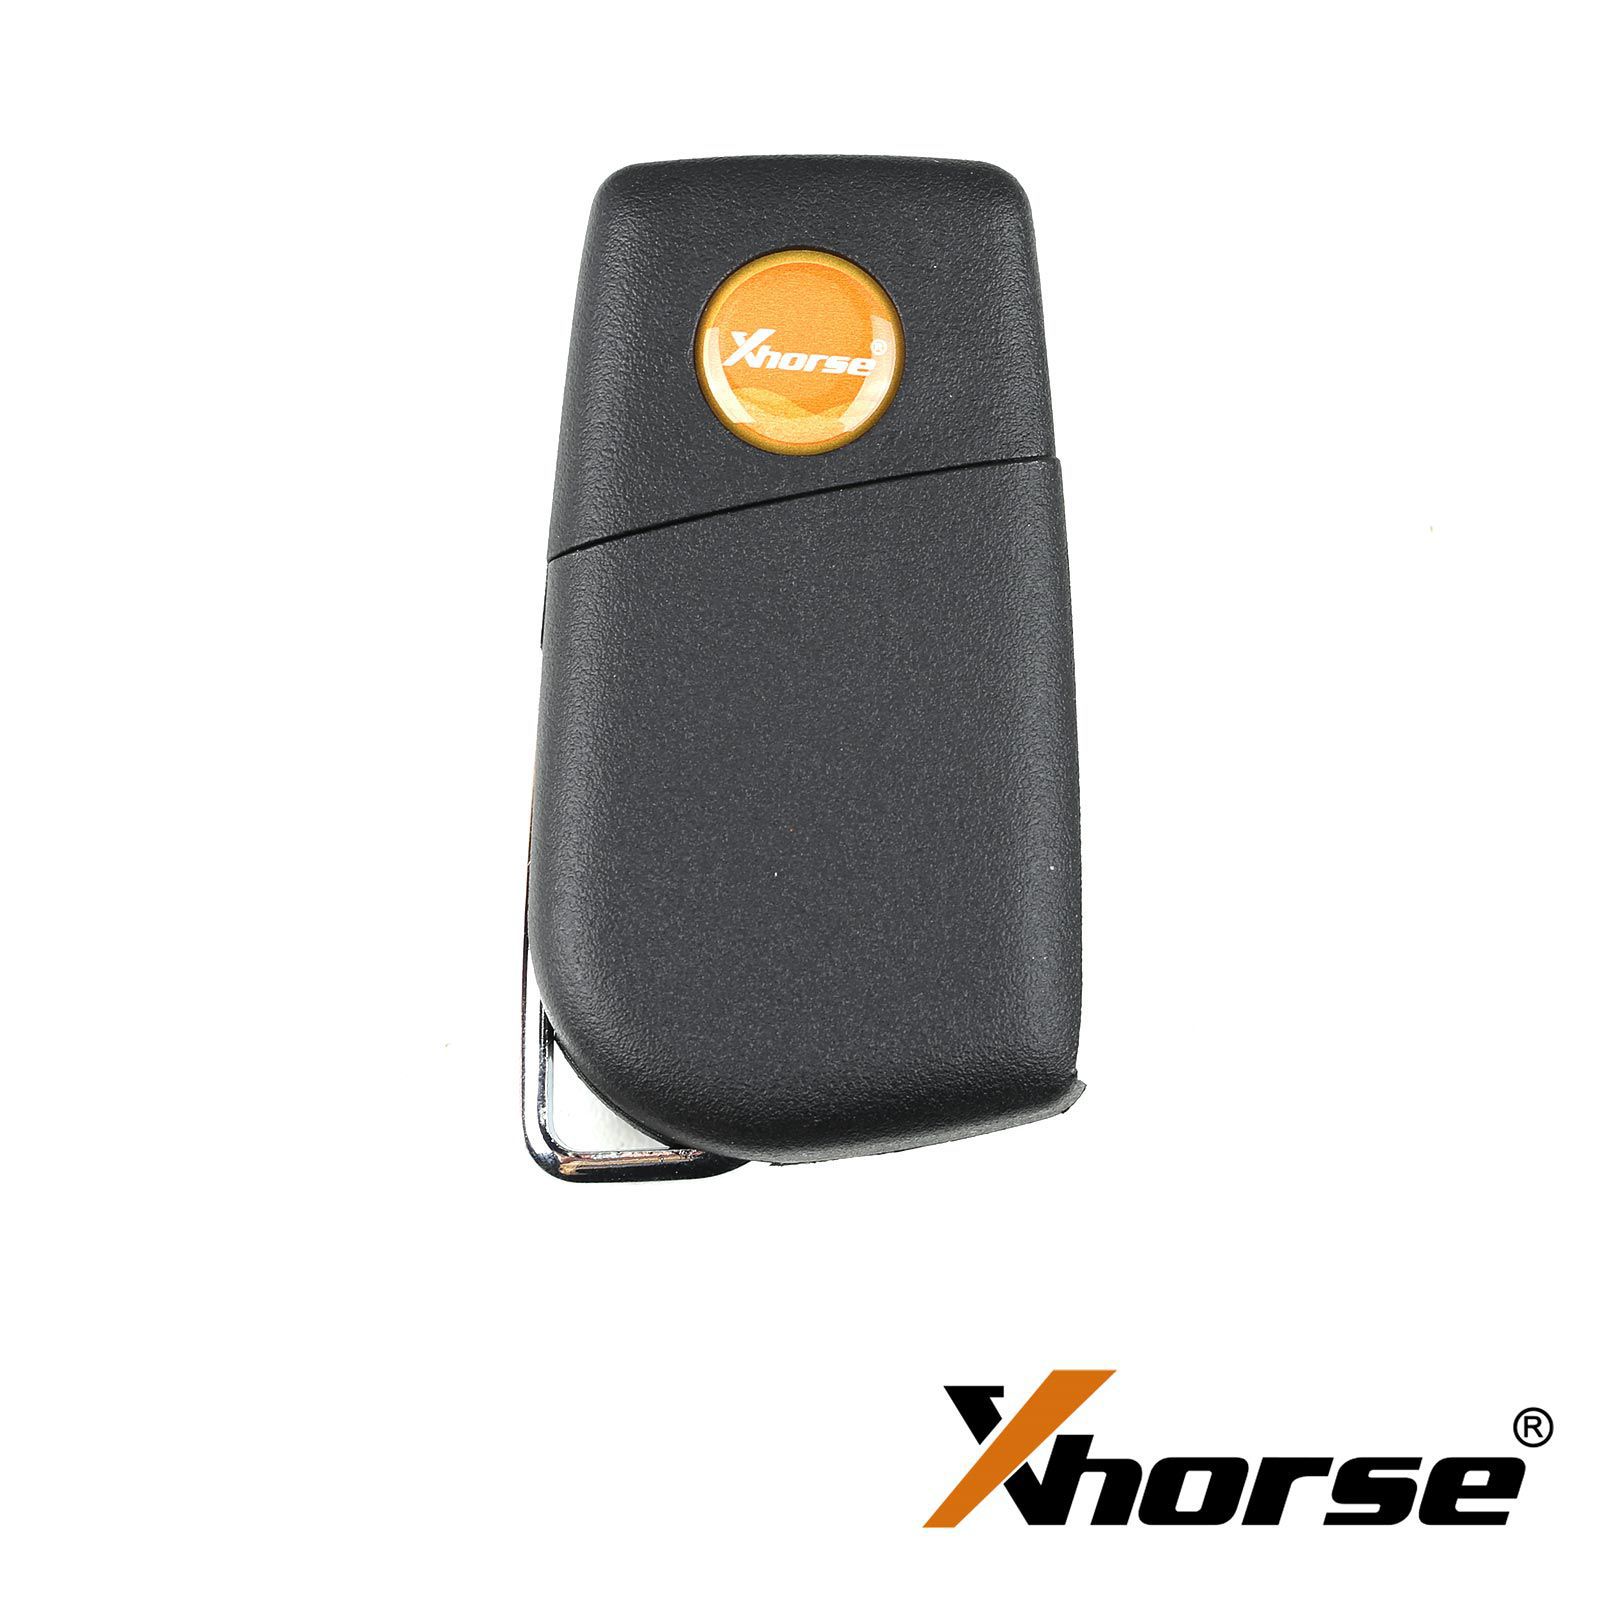 Xhorse xkto10en Wire télécommande clé Toyota Flip 4 boutons version anglaise 5pcs / lot